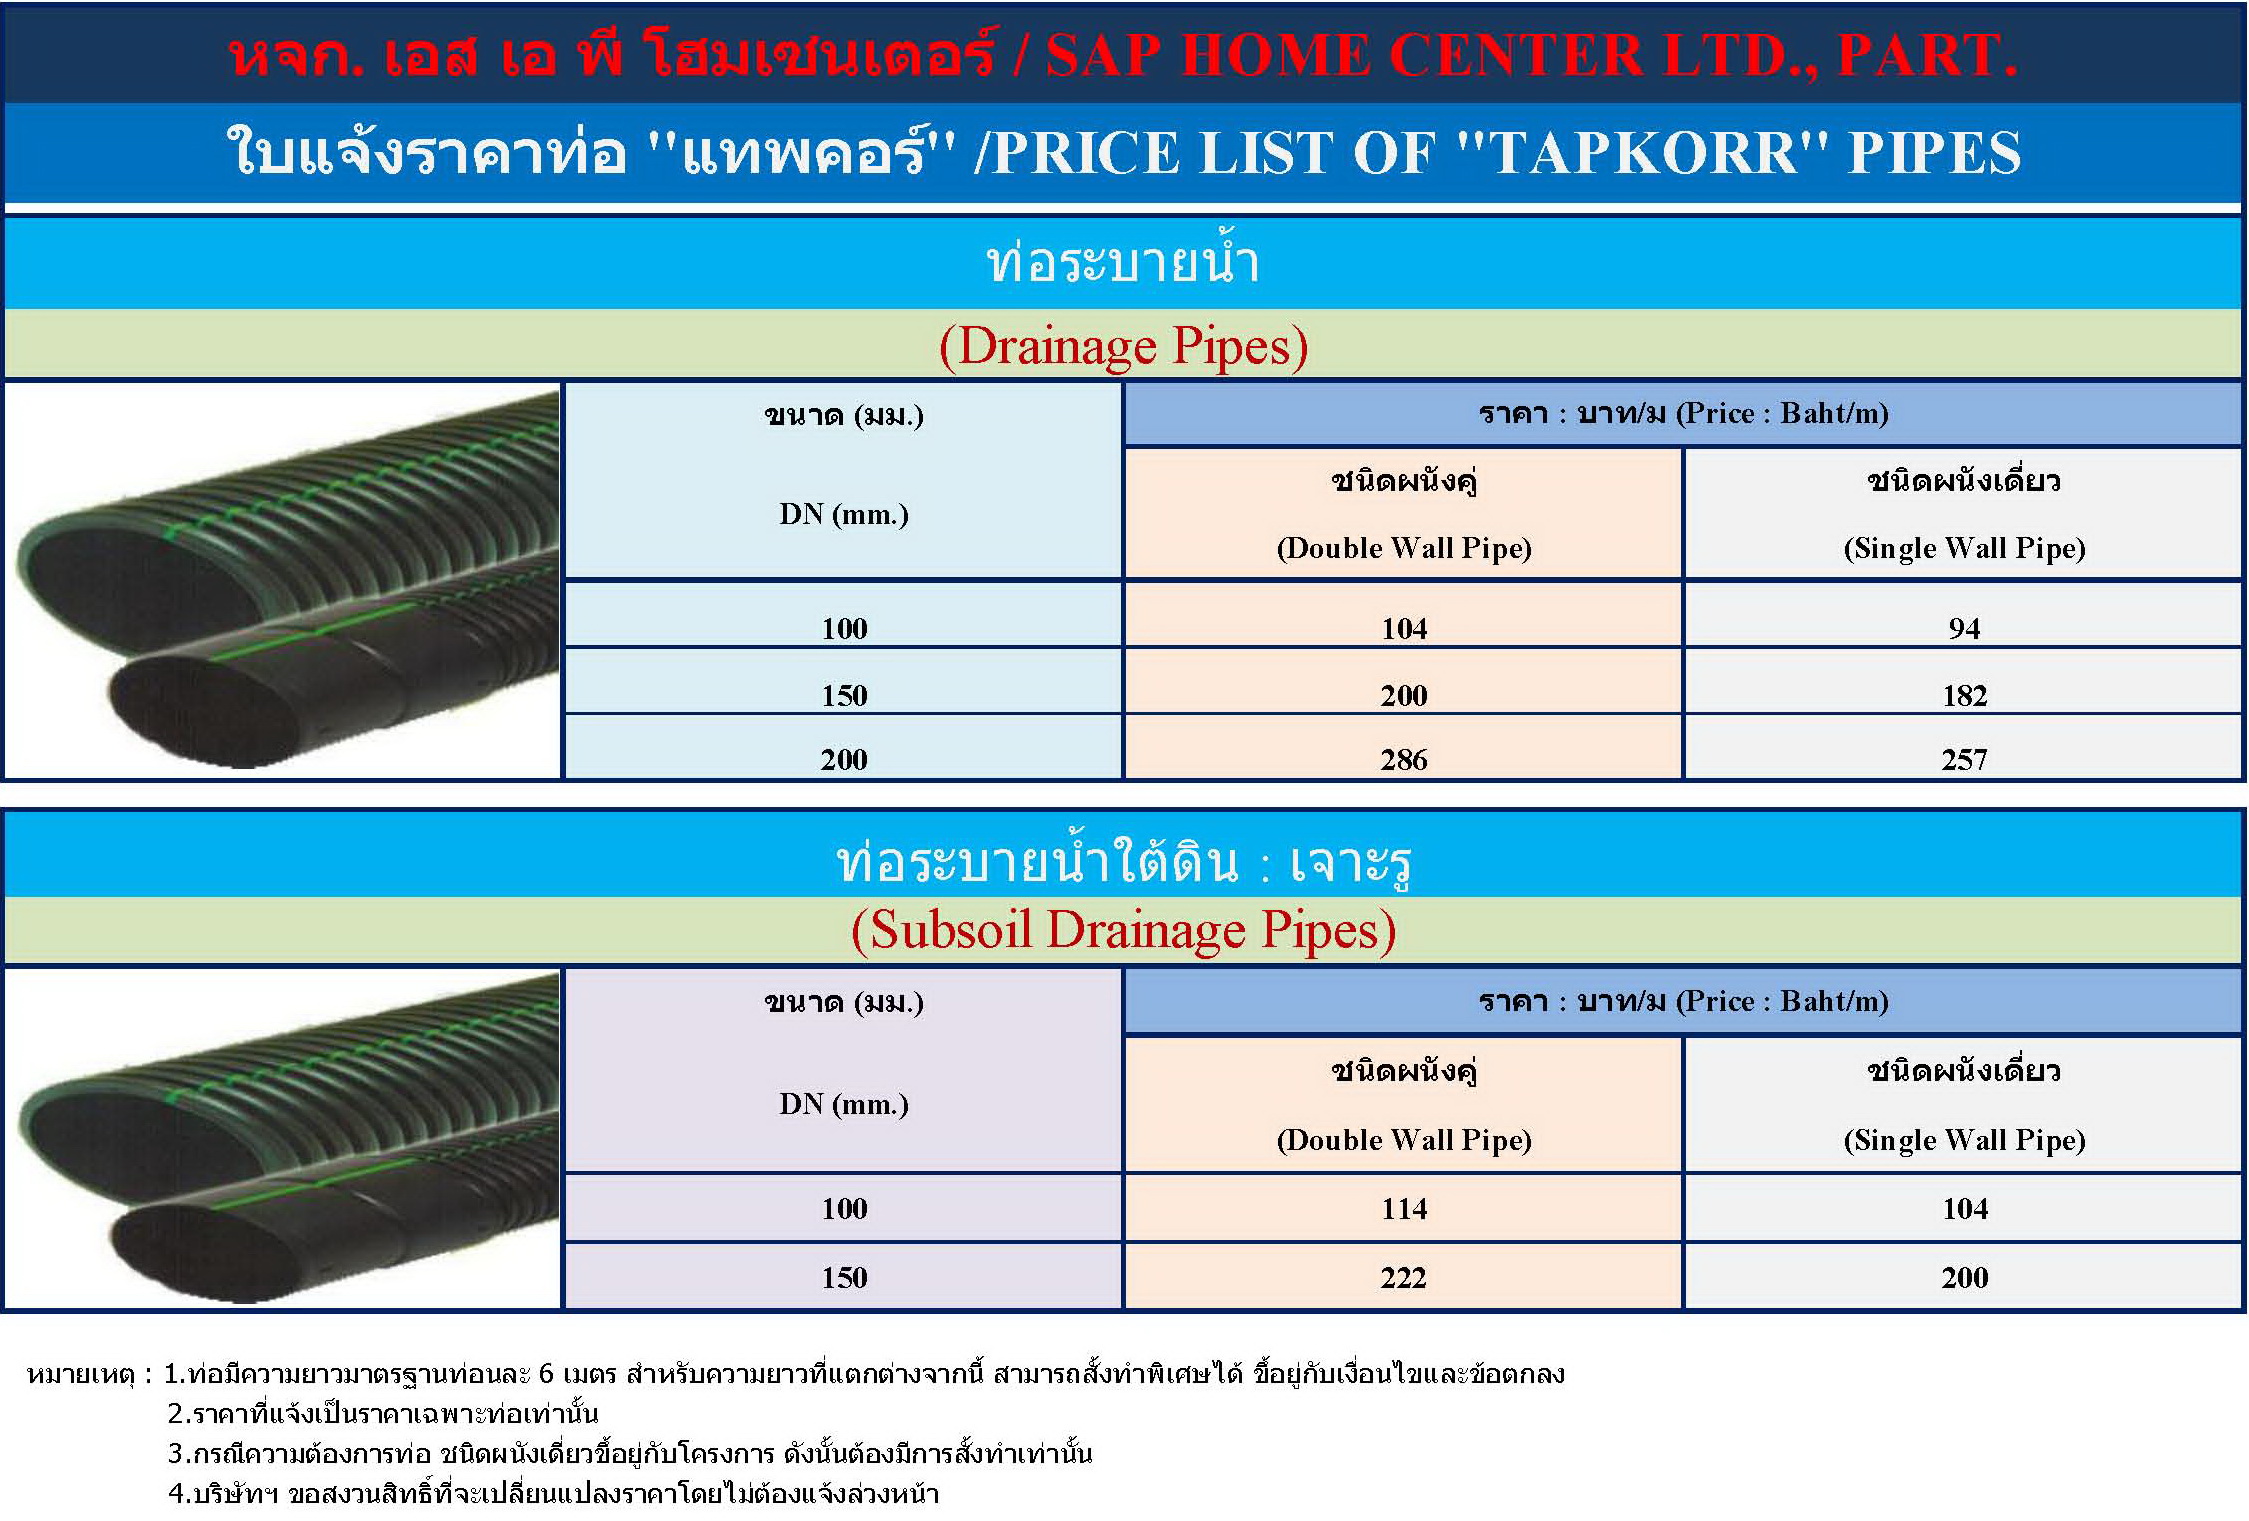 ราคาท่อ Tapkorr